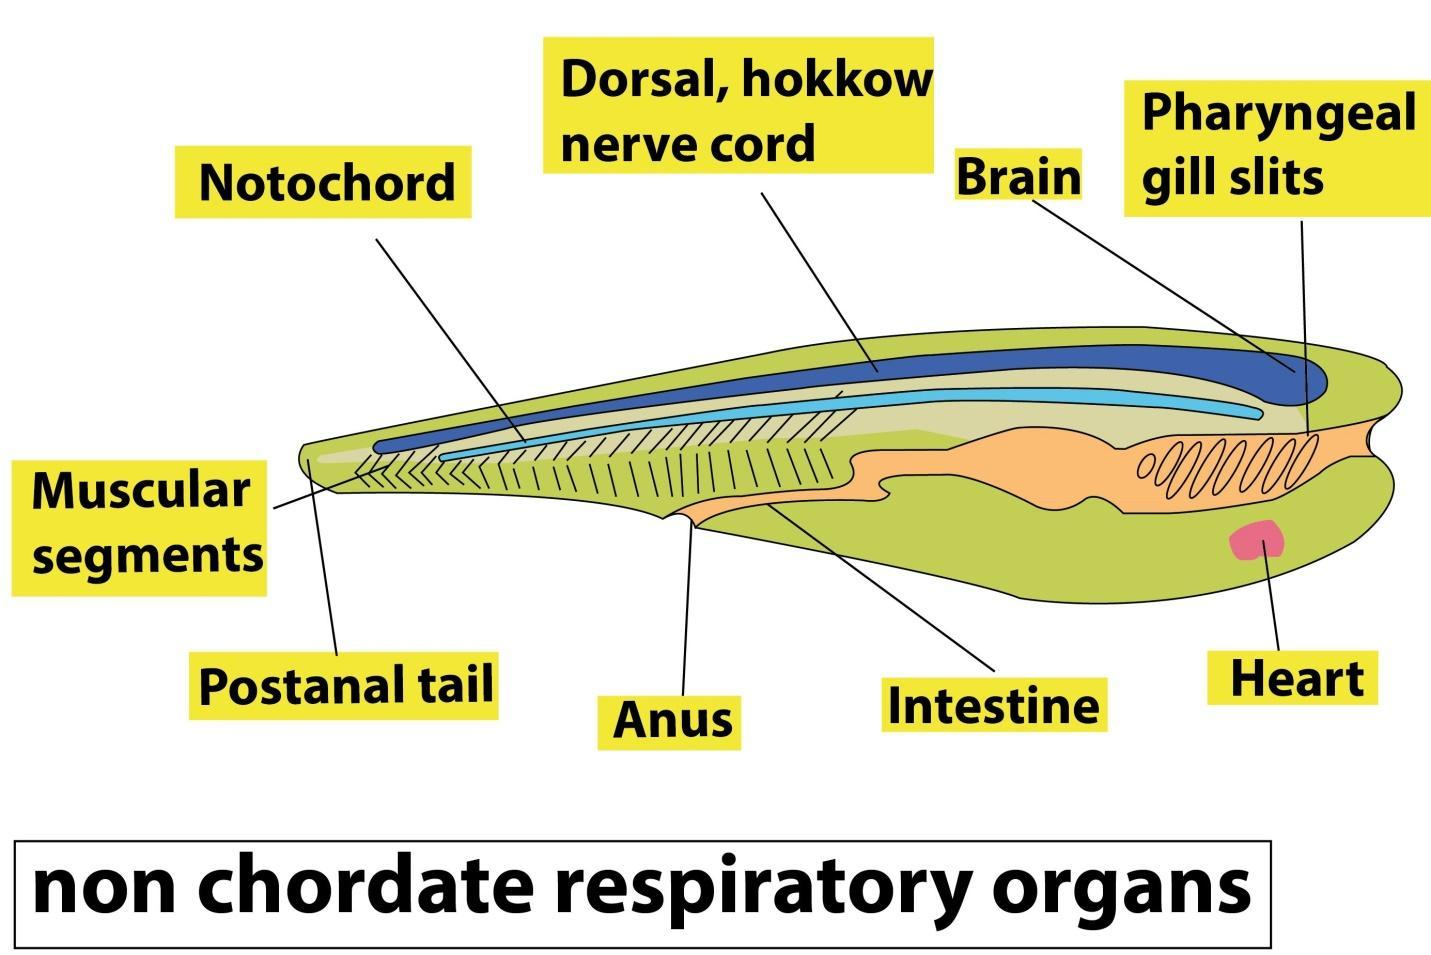 Describe the respiratory organs of non chordates.